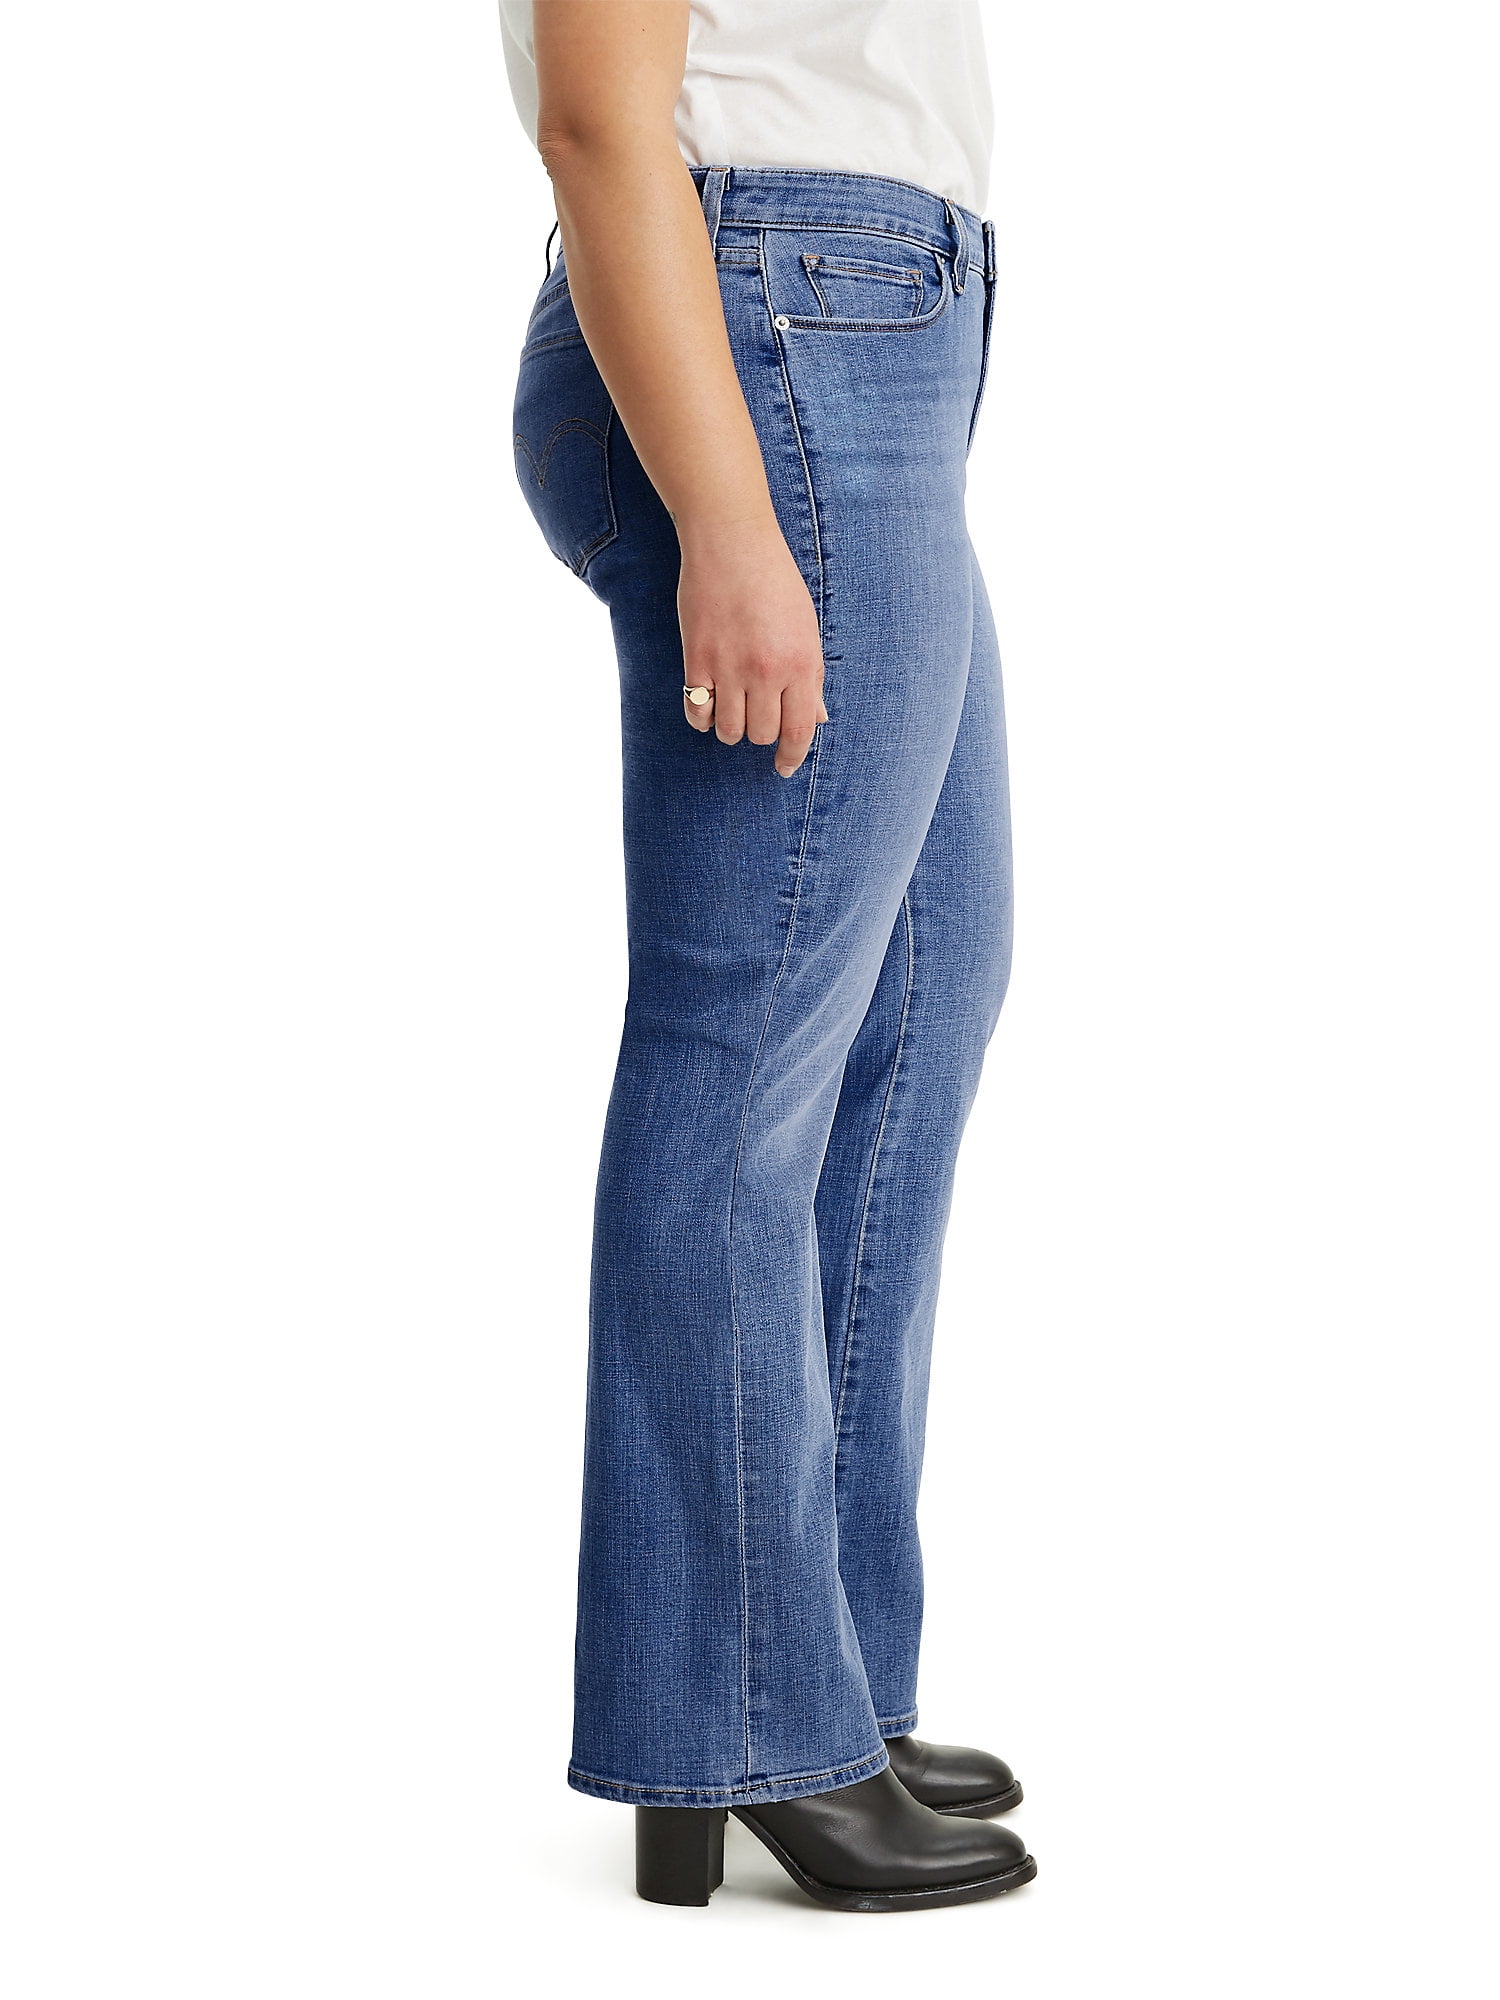 Levi's Women's Plus Size 415 Classic Bootcut Jeans 